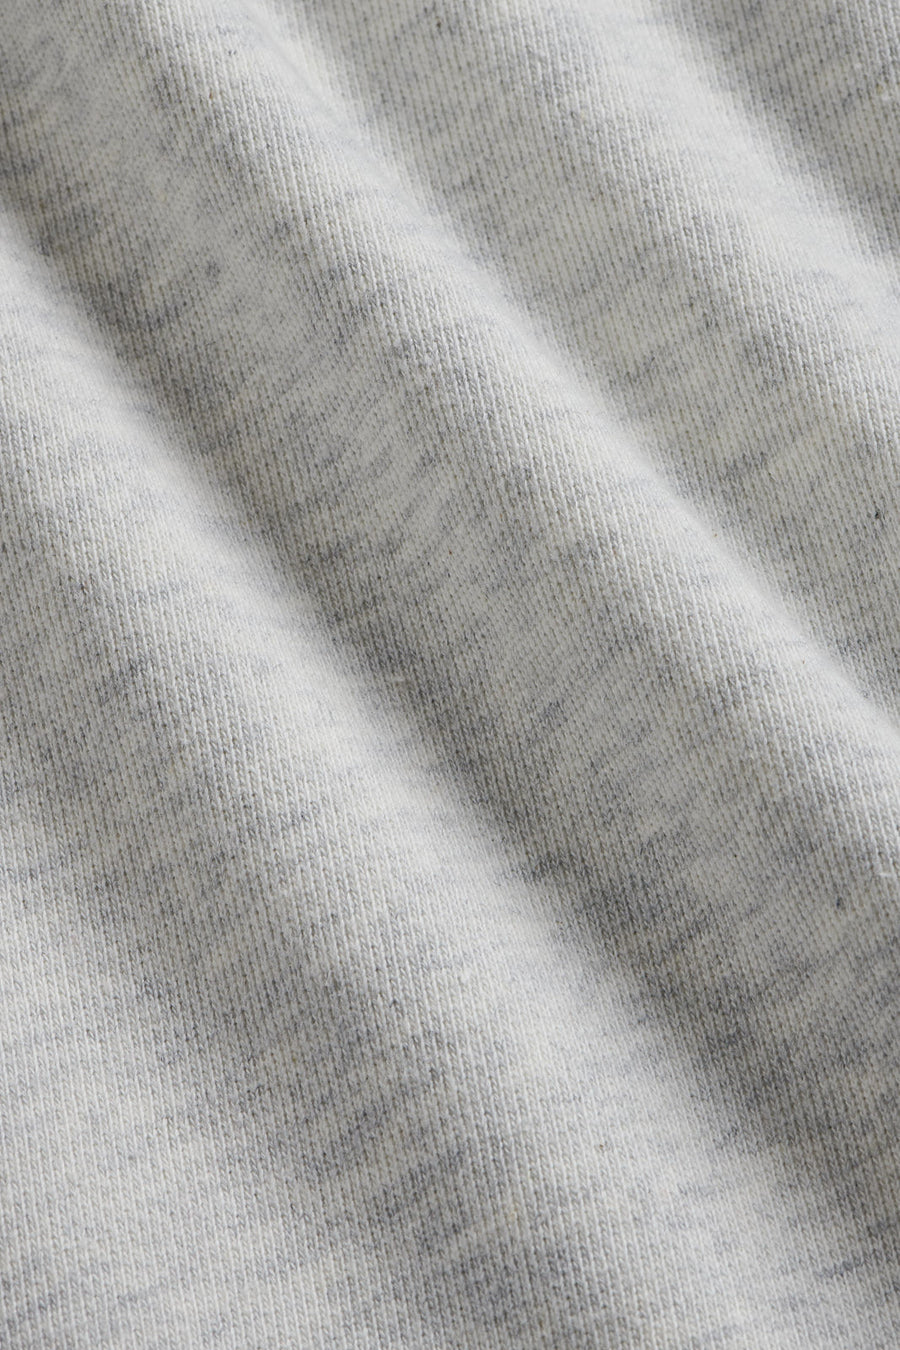 Essential French Terry Sweatshirt in Grey Marl